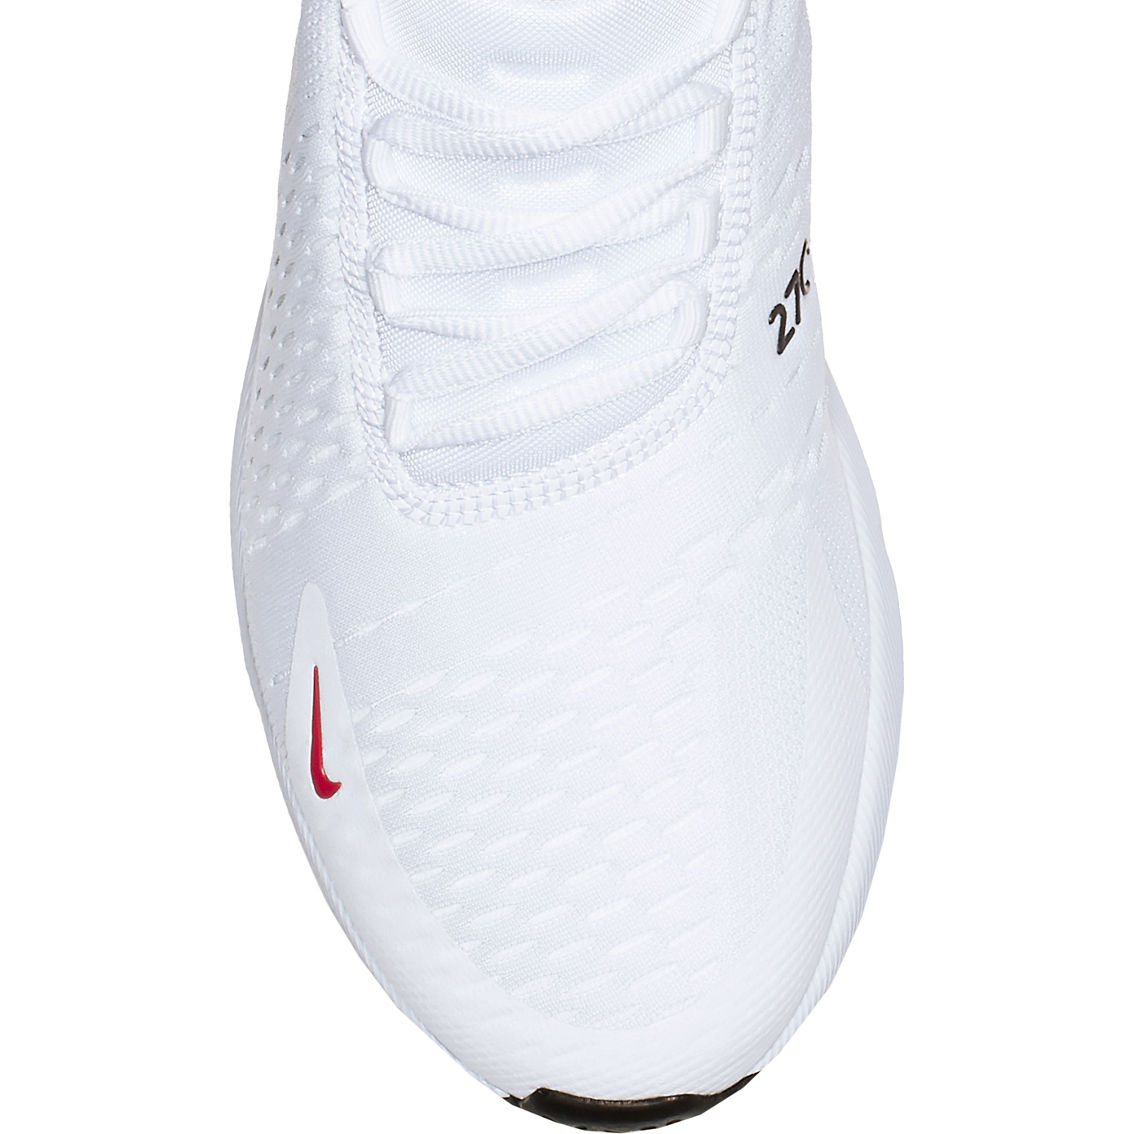 Nike Men's Air Max 270 Sneakers - Image 4 of 6